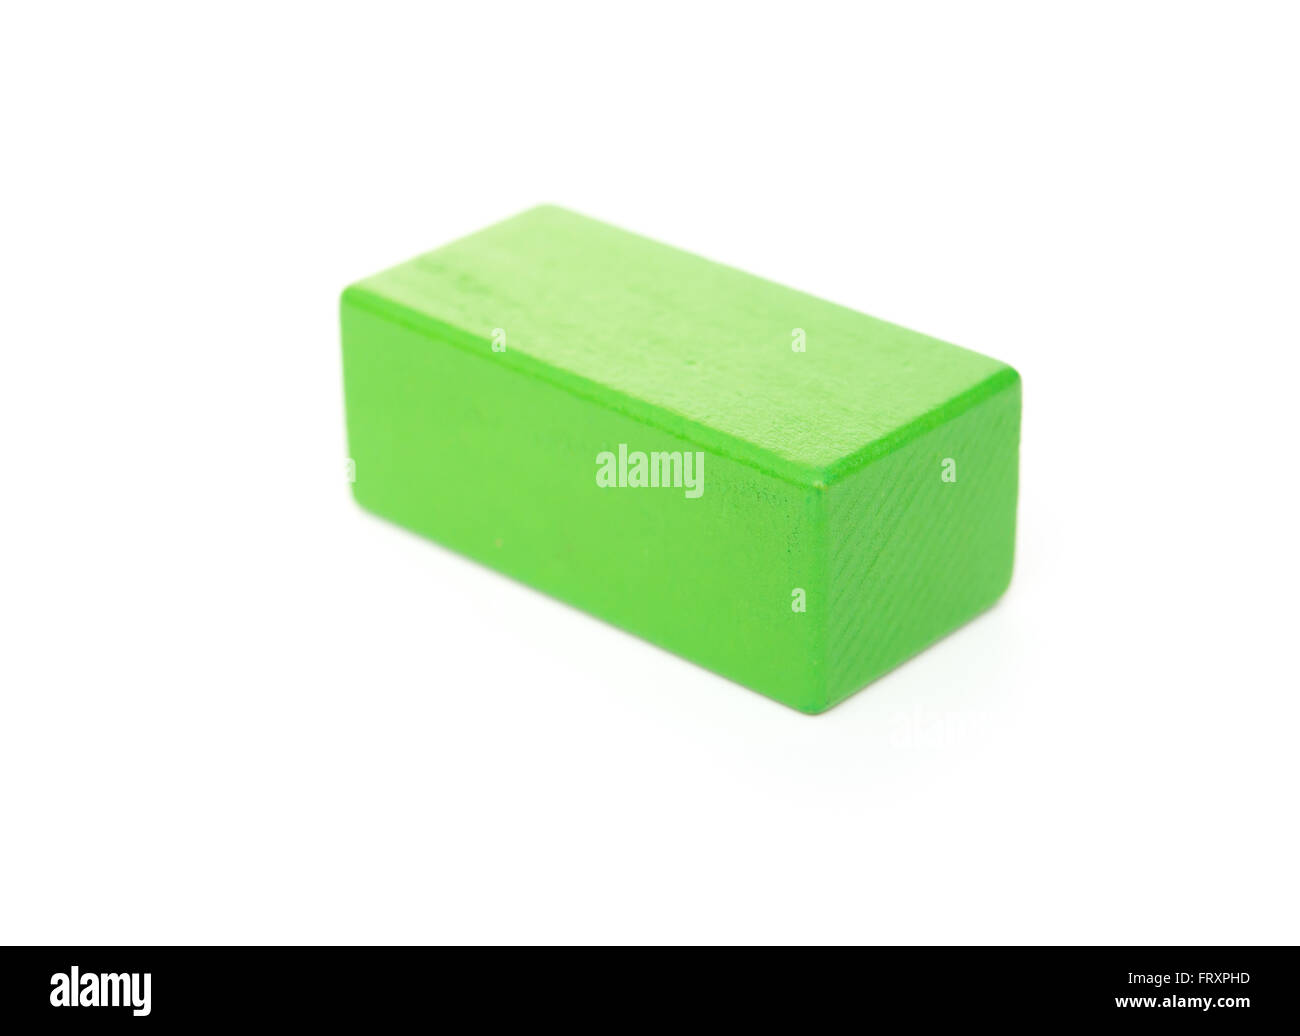 Stein grün Holzspielzeug auf weißem Hintergrund Stockfoto